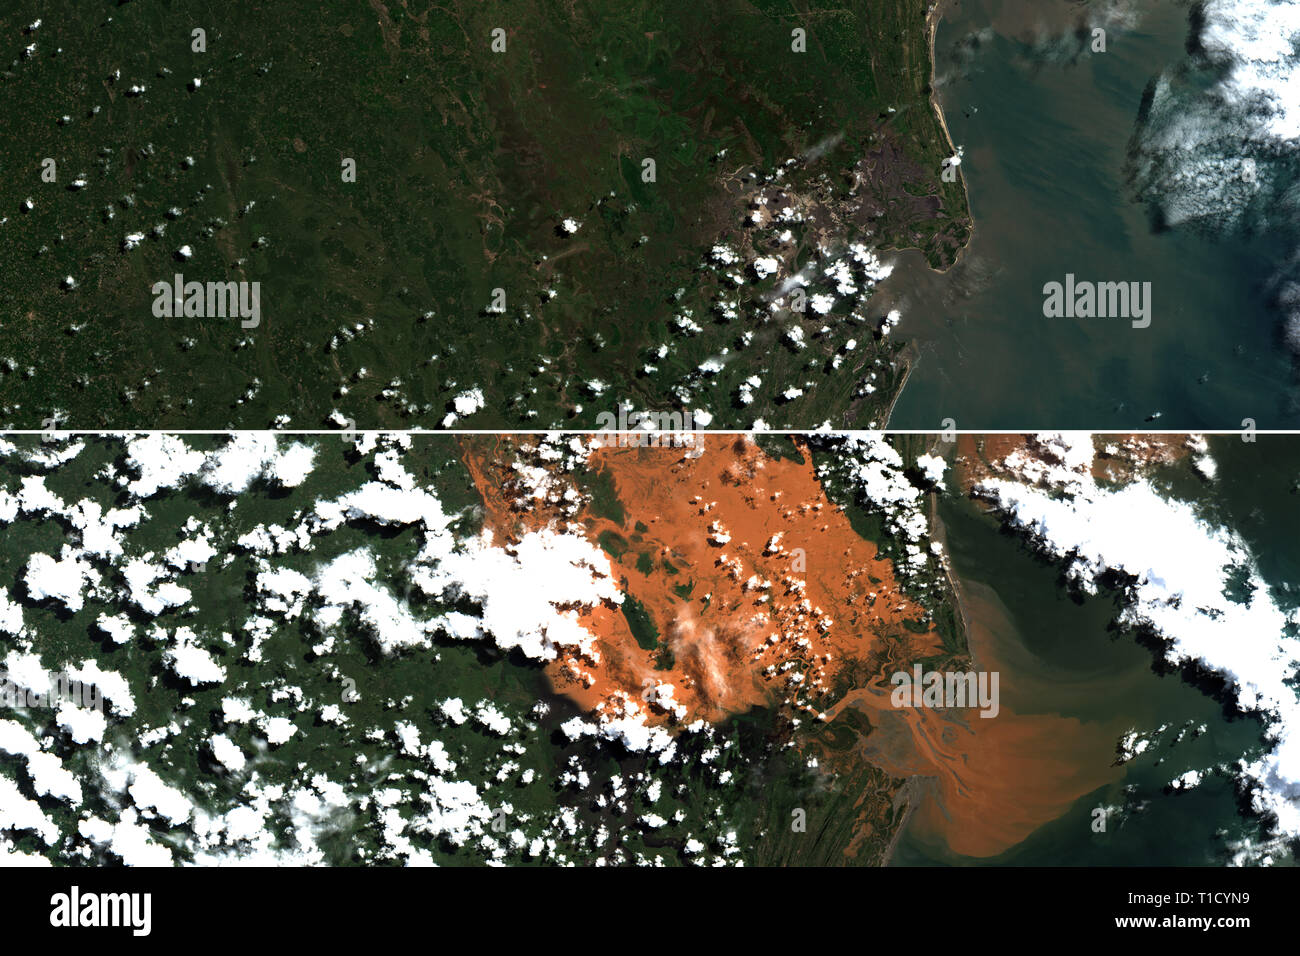 Inondations au Mozambique, avant et après l'arrivée du cyclone Idai en mars 2019 - contient des données Sentinel Copernicus modifiés (2019) Banque D'Images